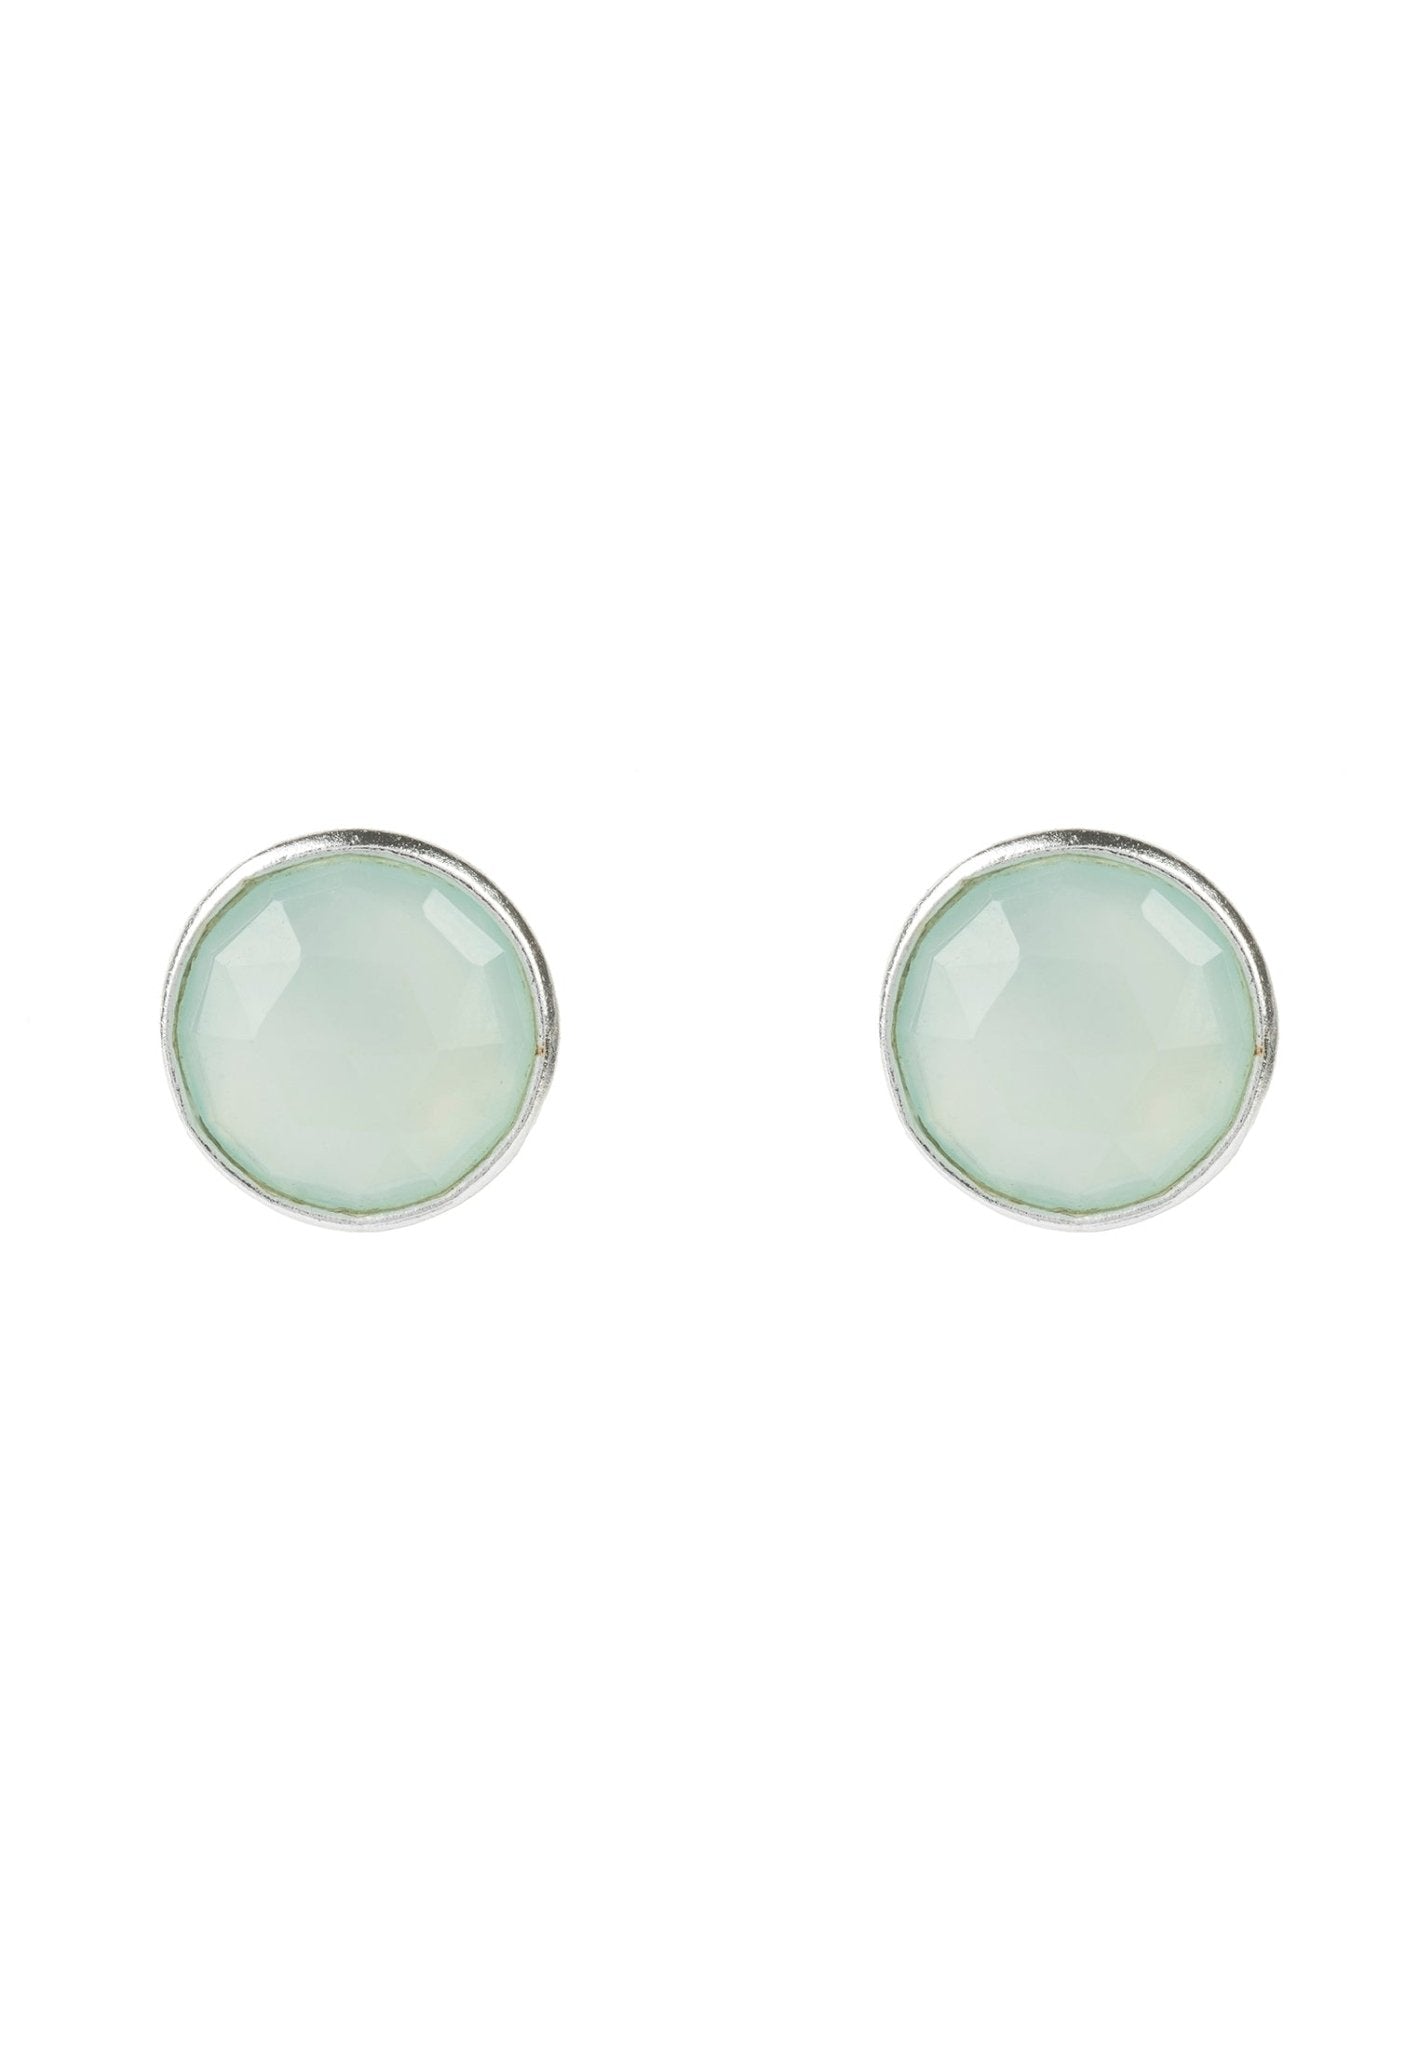 Medium Circle Gemstone Earrings Silver Aqua Chalcedony - LATELITA Earrings